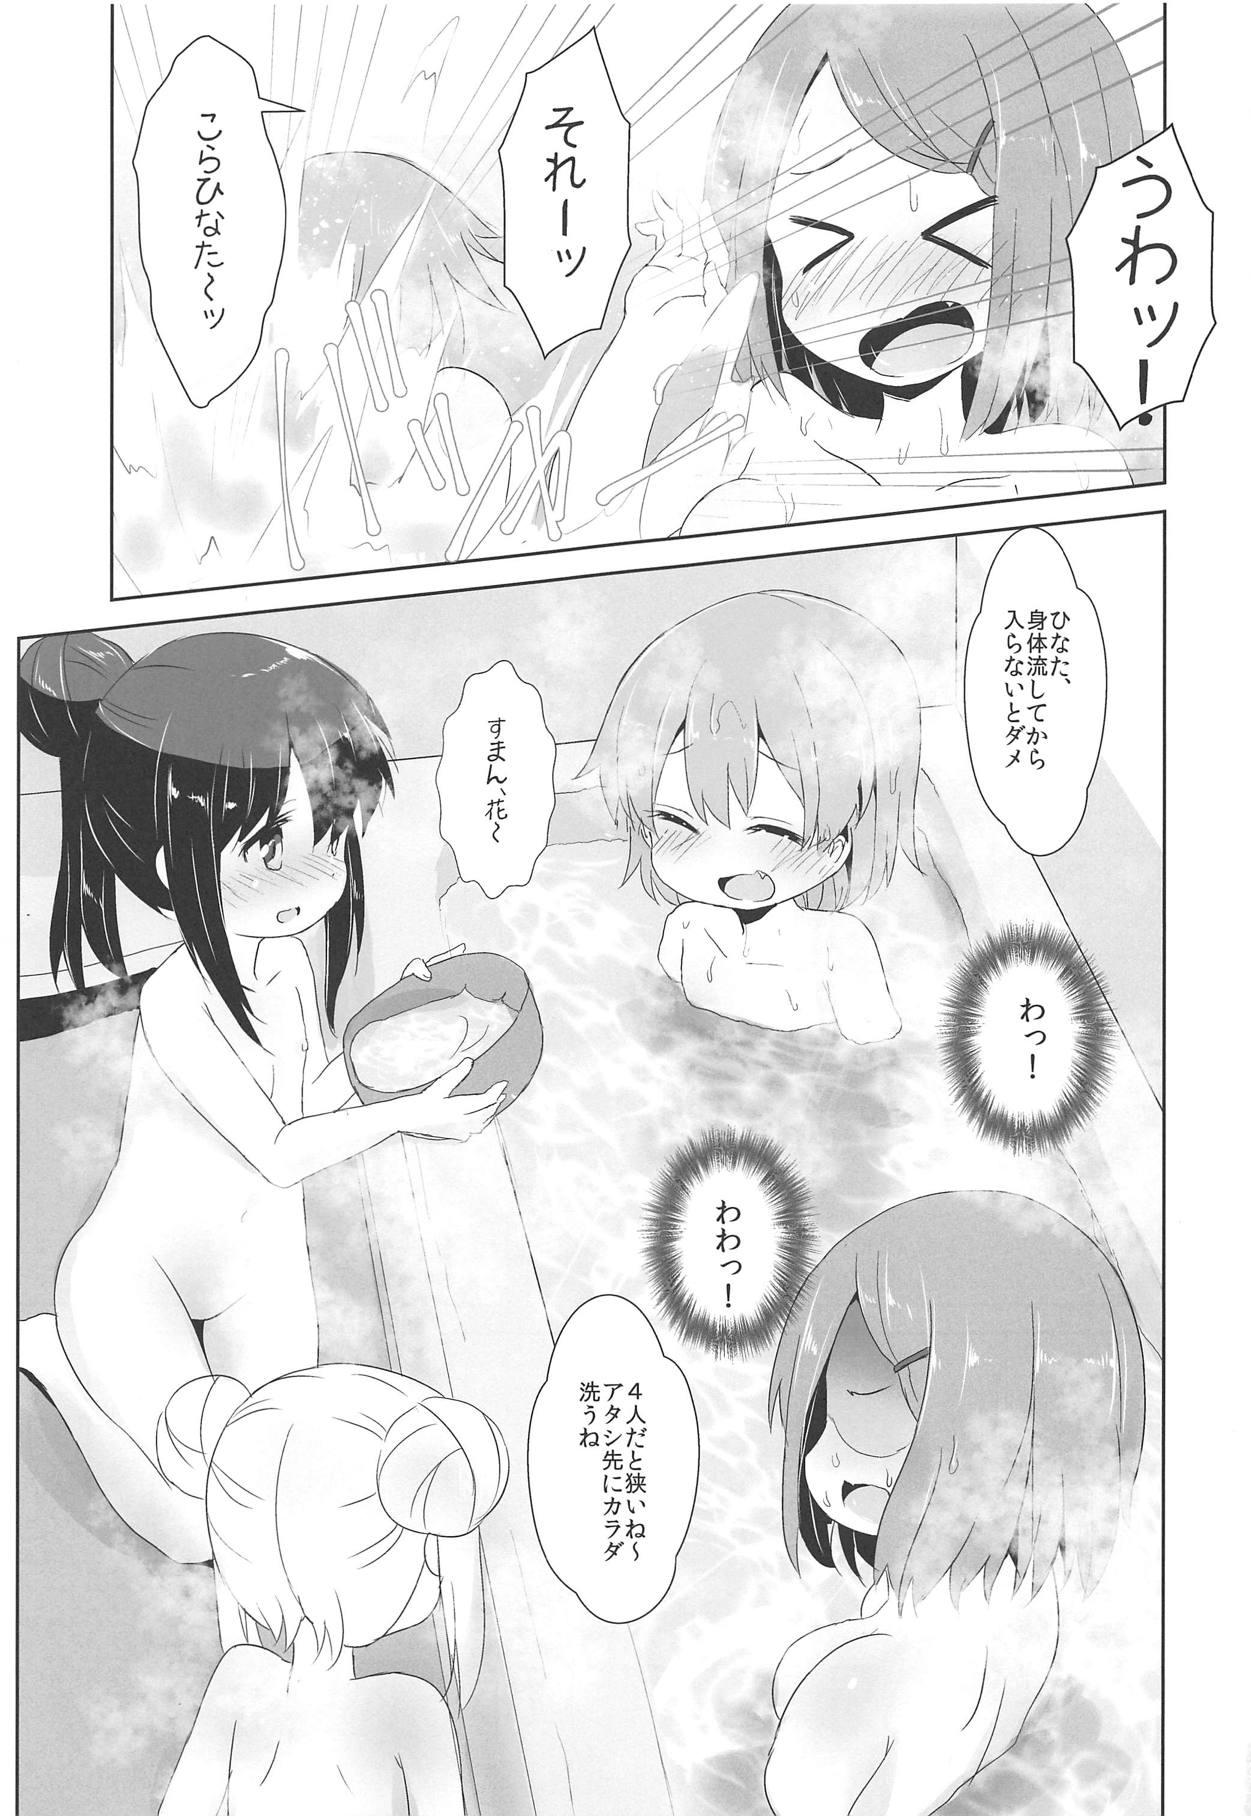 Bribe Ofuro ni Tenshi ga Maiorita! - Watashi ni tenshi ga maiorita Licking Pussy - Page 4